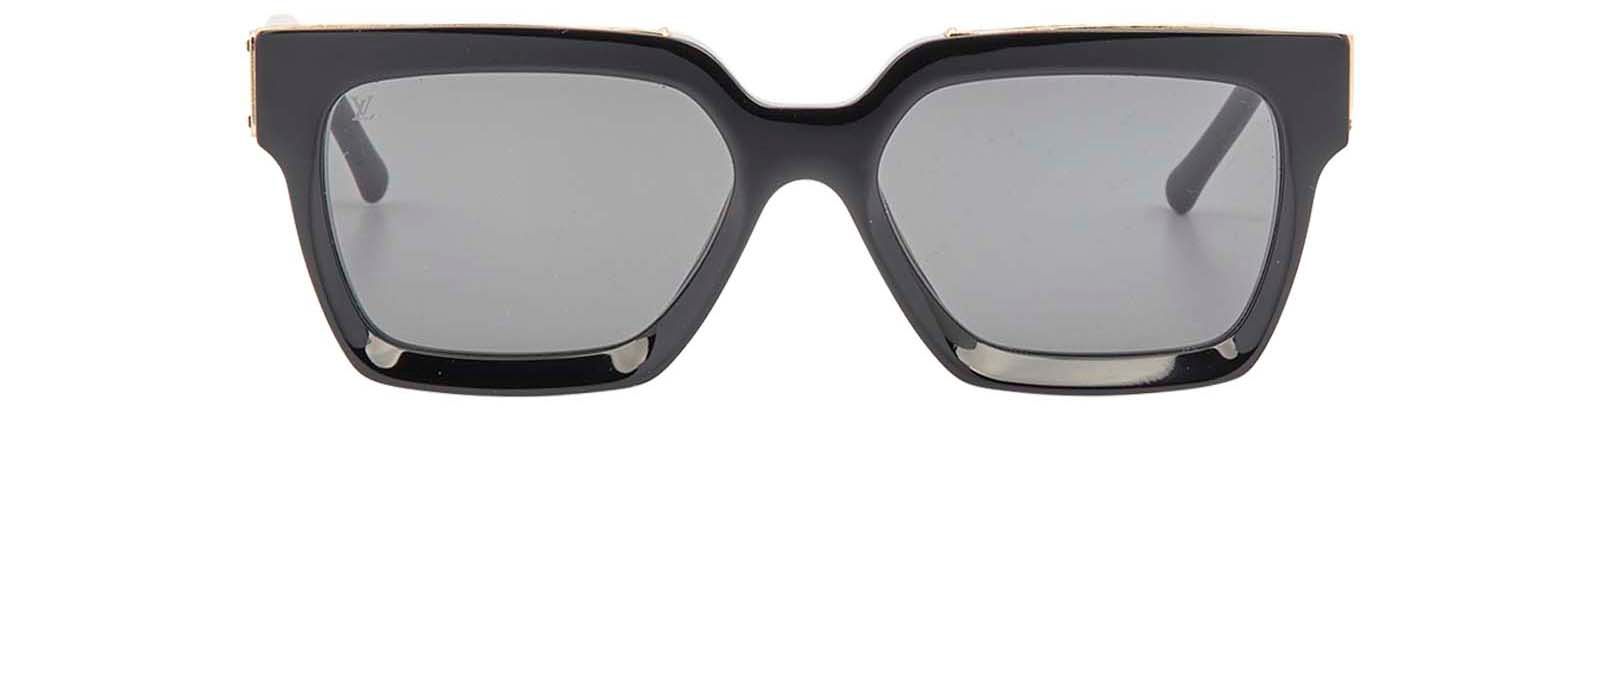 LOUIS VUITTON Millionaire Sunglasses Z1165W Black